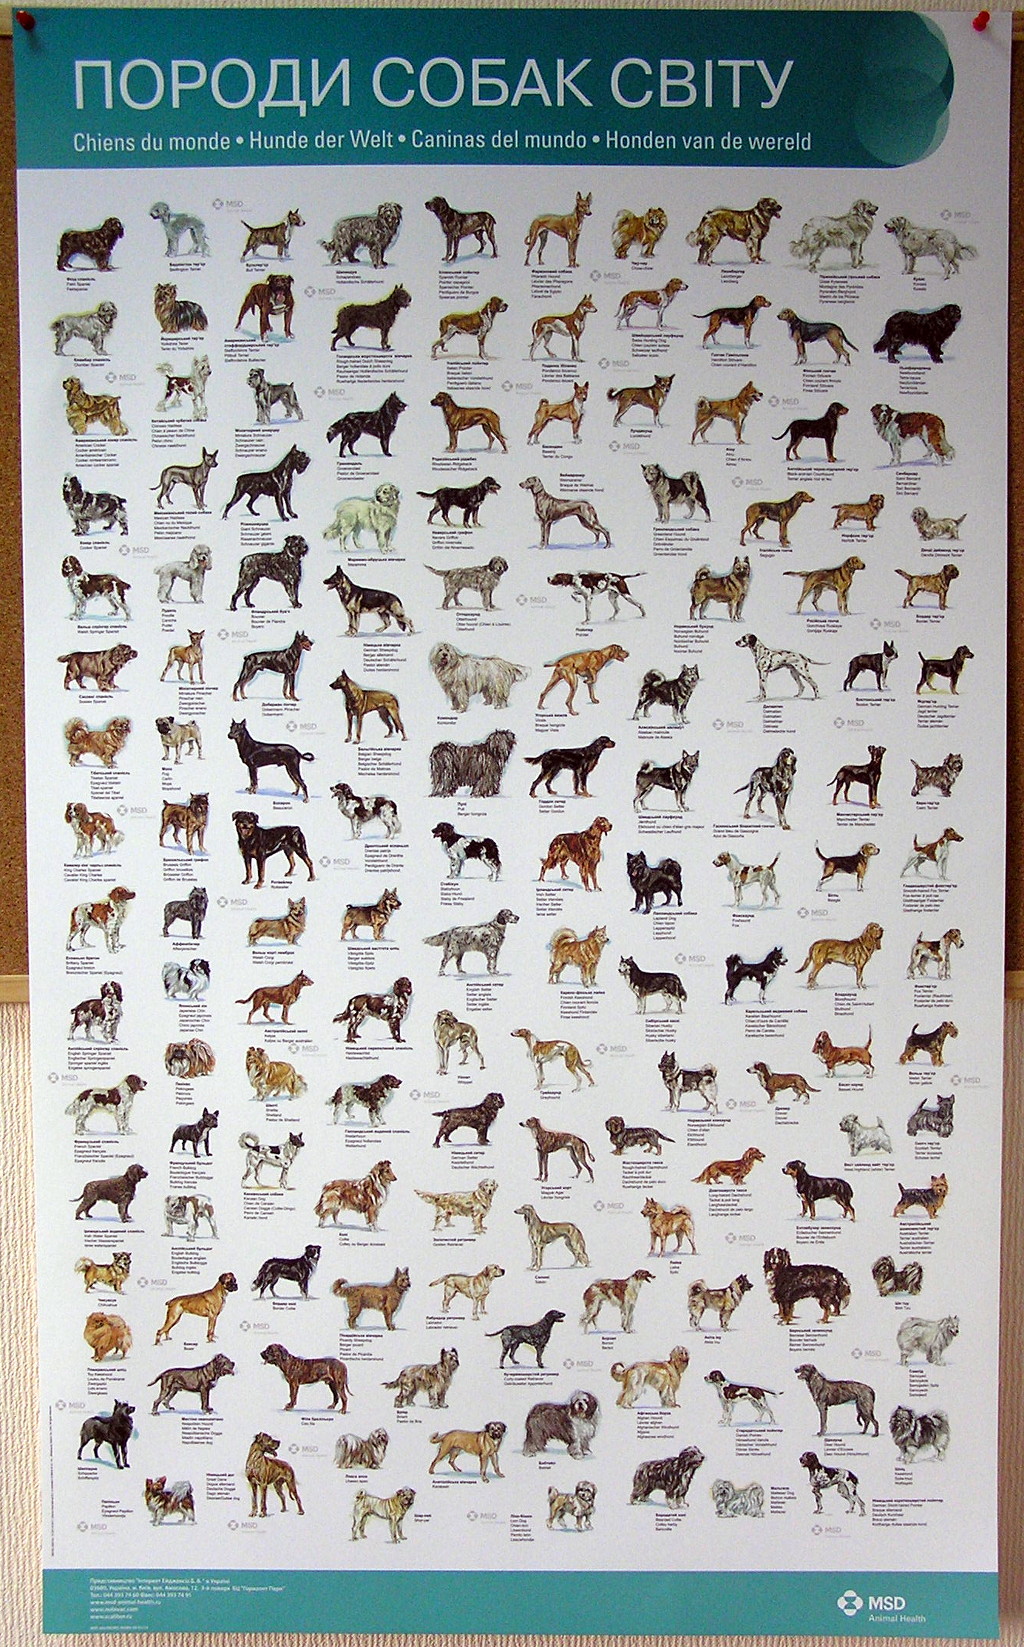 Печать плакатов «Породи собак світу». Полиграфия типографии Макрос, изготовление плакатов, спецификация 959998-1